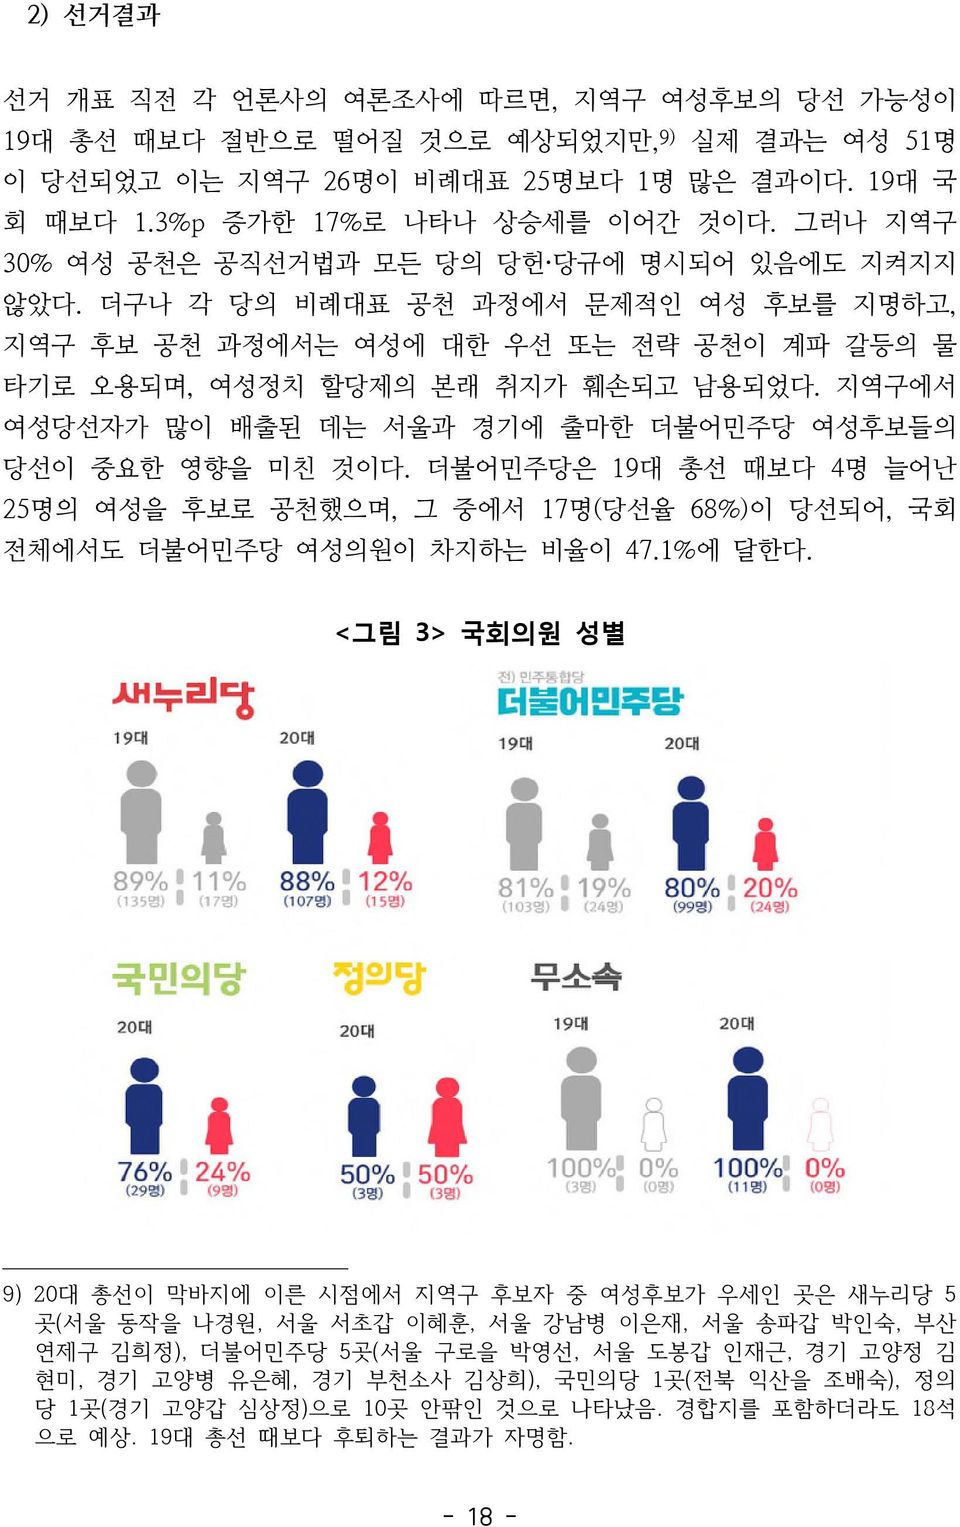 지역구에서 여성당선자가 많이 배출된 데는 서울과 경기에 출마한 더불어민주당 여성후보들의 당선이 중요한 영향을 미친 것이다. 더불어민주당은 19대 총선 때보다 4명 늘어난 25 명의 여성을 후보로 공천했으며, 그 중에서 17 명( 당선율 68%) 이 당선되어, 국회 전체에서도 더불어민주당 여성의원이 차지하는 비율이 47.1% 에 달한다.